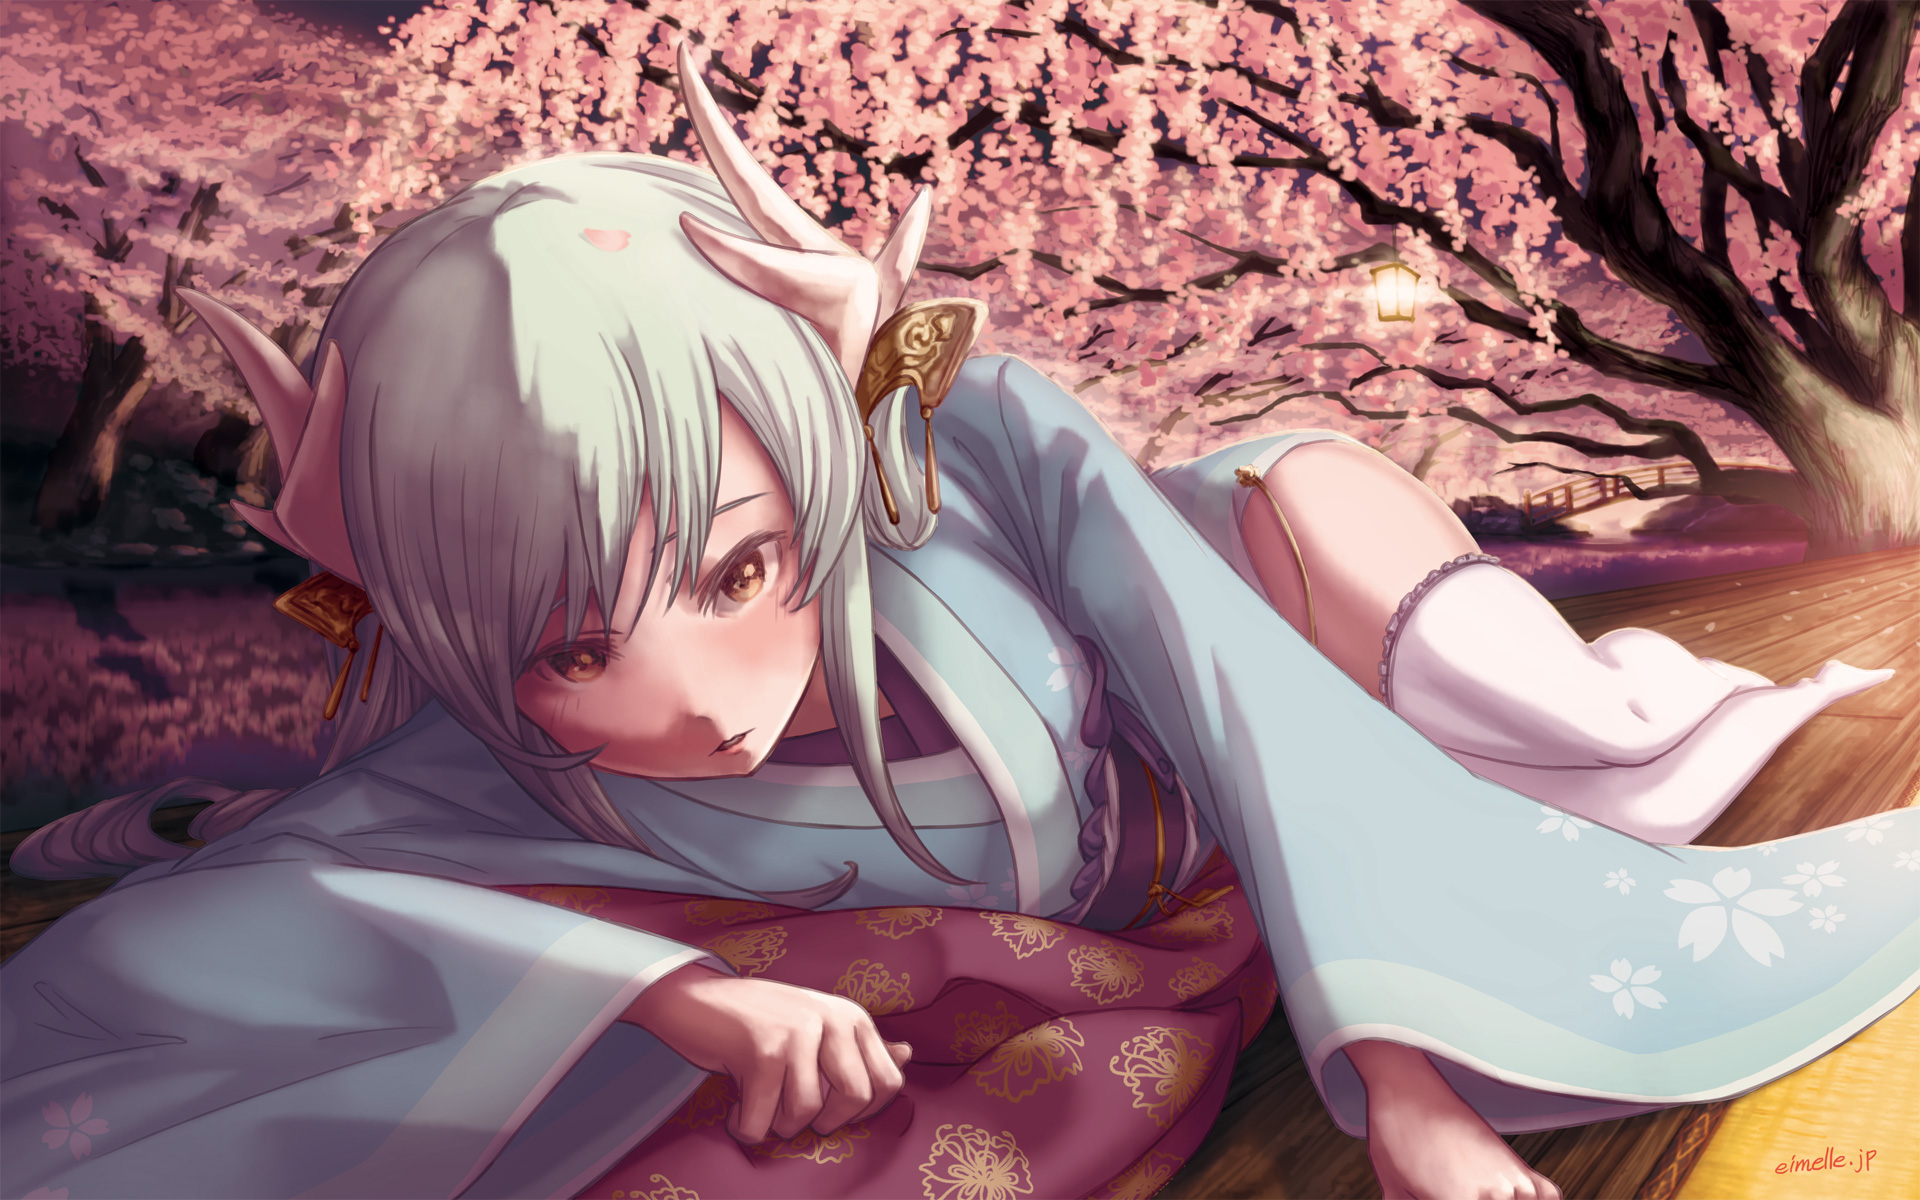 Fatego 夜桜とマスターにせまる清姫の絵 にくきゅうblog